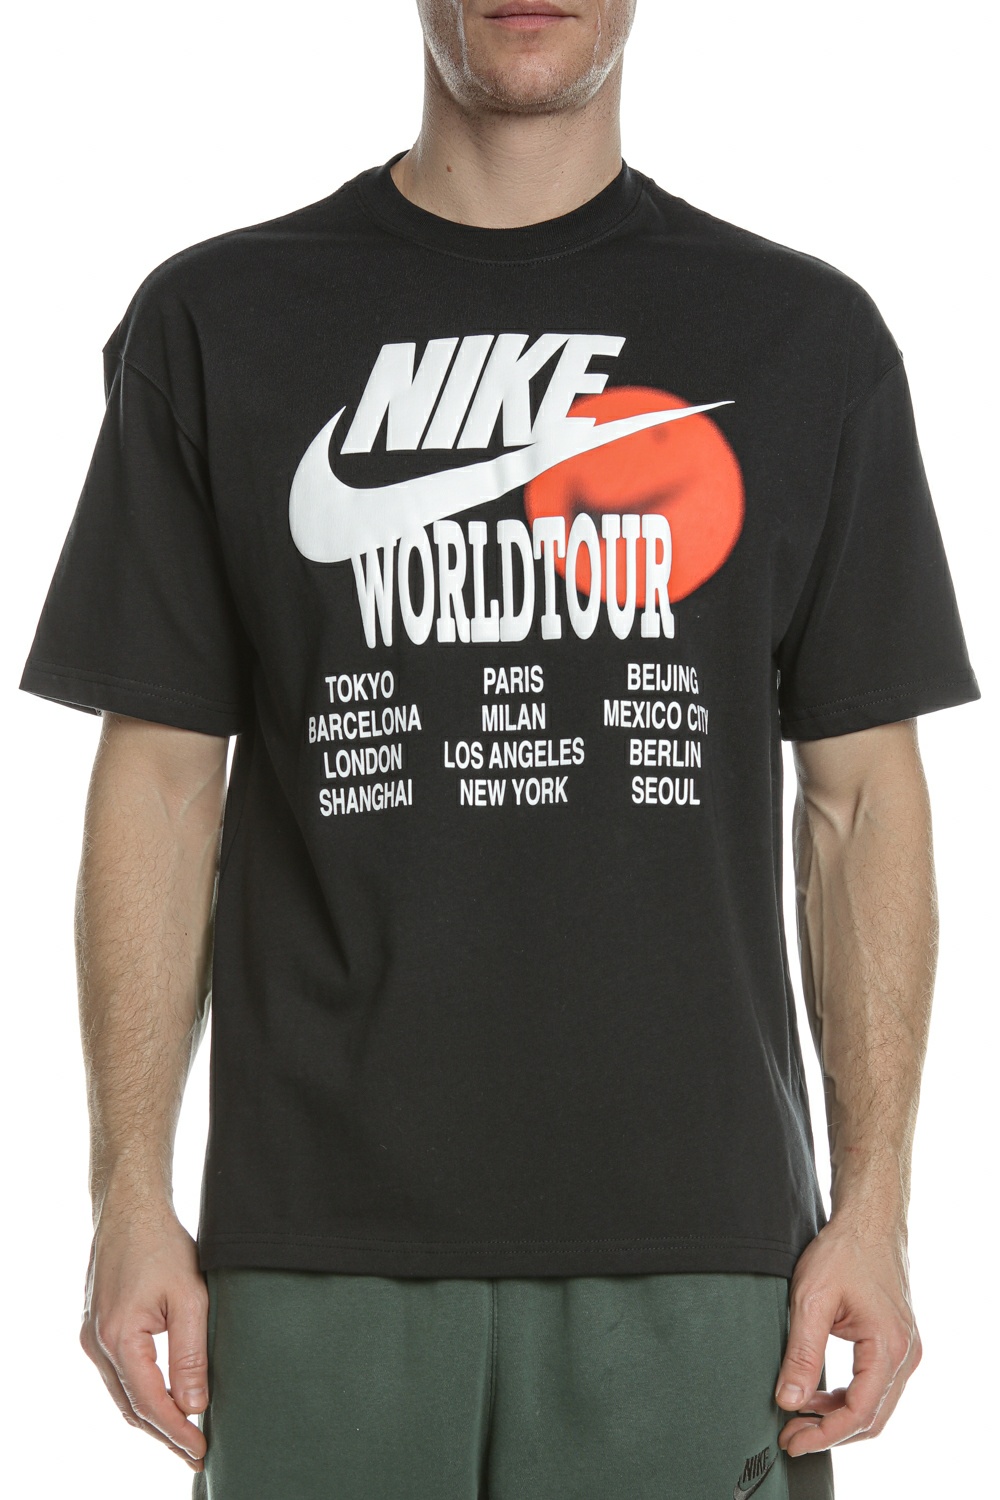 Ανδρικά/Ρούχα/Αθλητικά/T-shirt NIKE - Ανδρικό t-shirt NIKE NSW TEE WORLD TOUR μαύρο